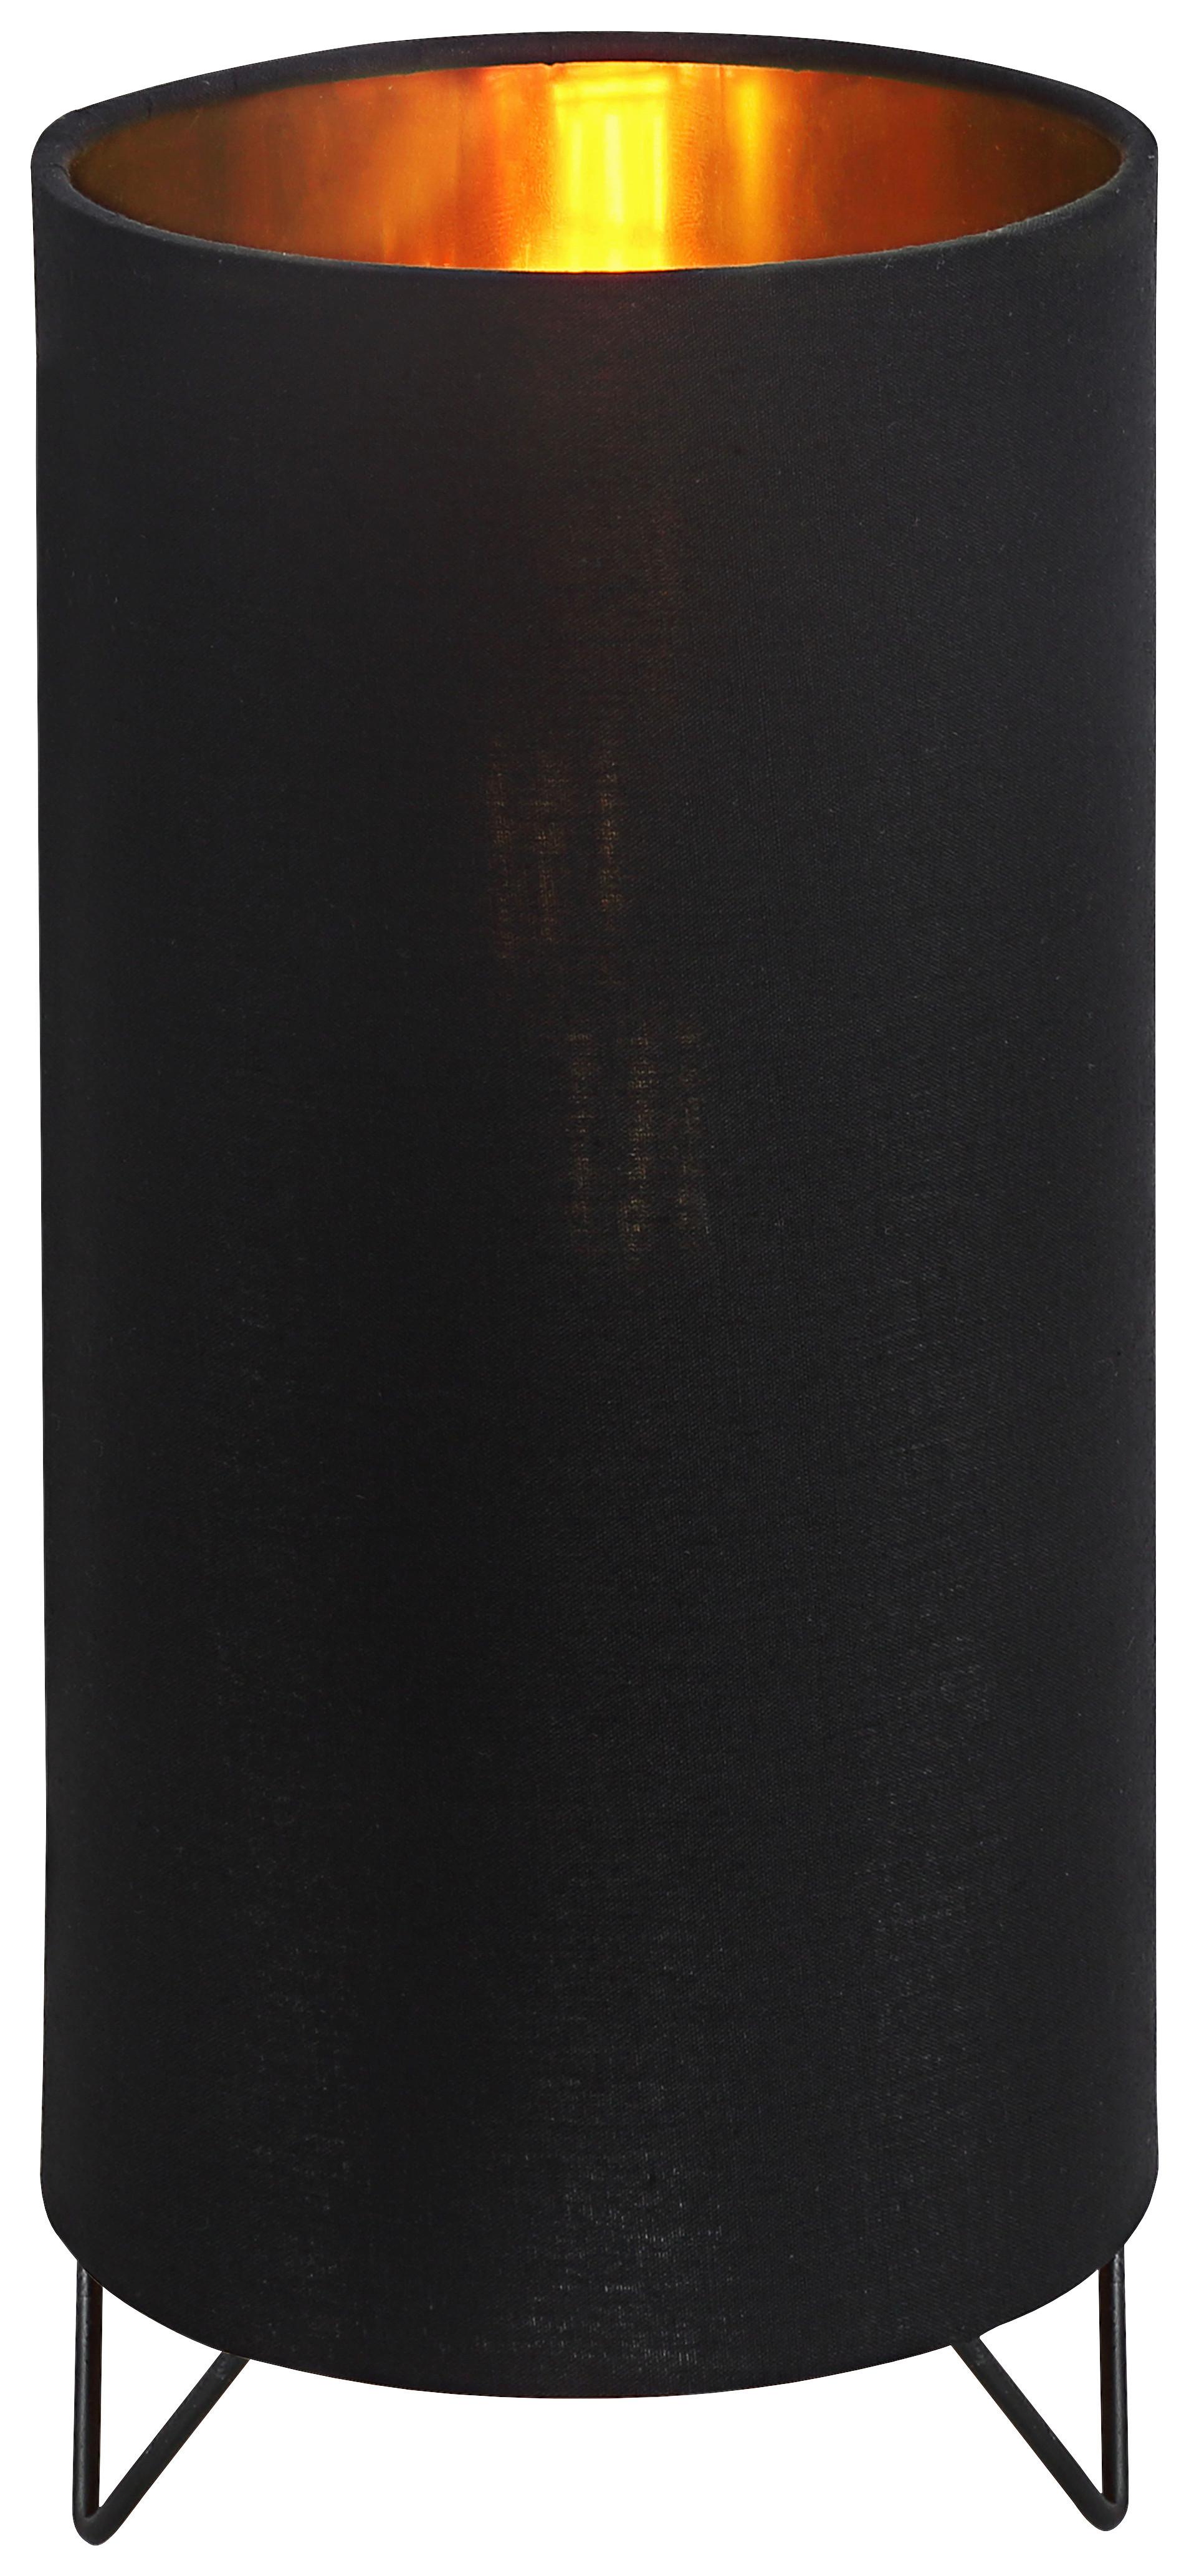 Asztali Lámpa Goldi - Arany/Fekete, modern, Fém/Textil (25,5cm) - Modern Living